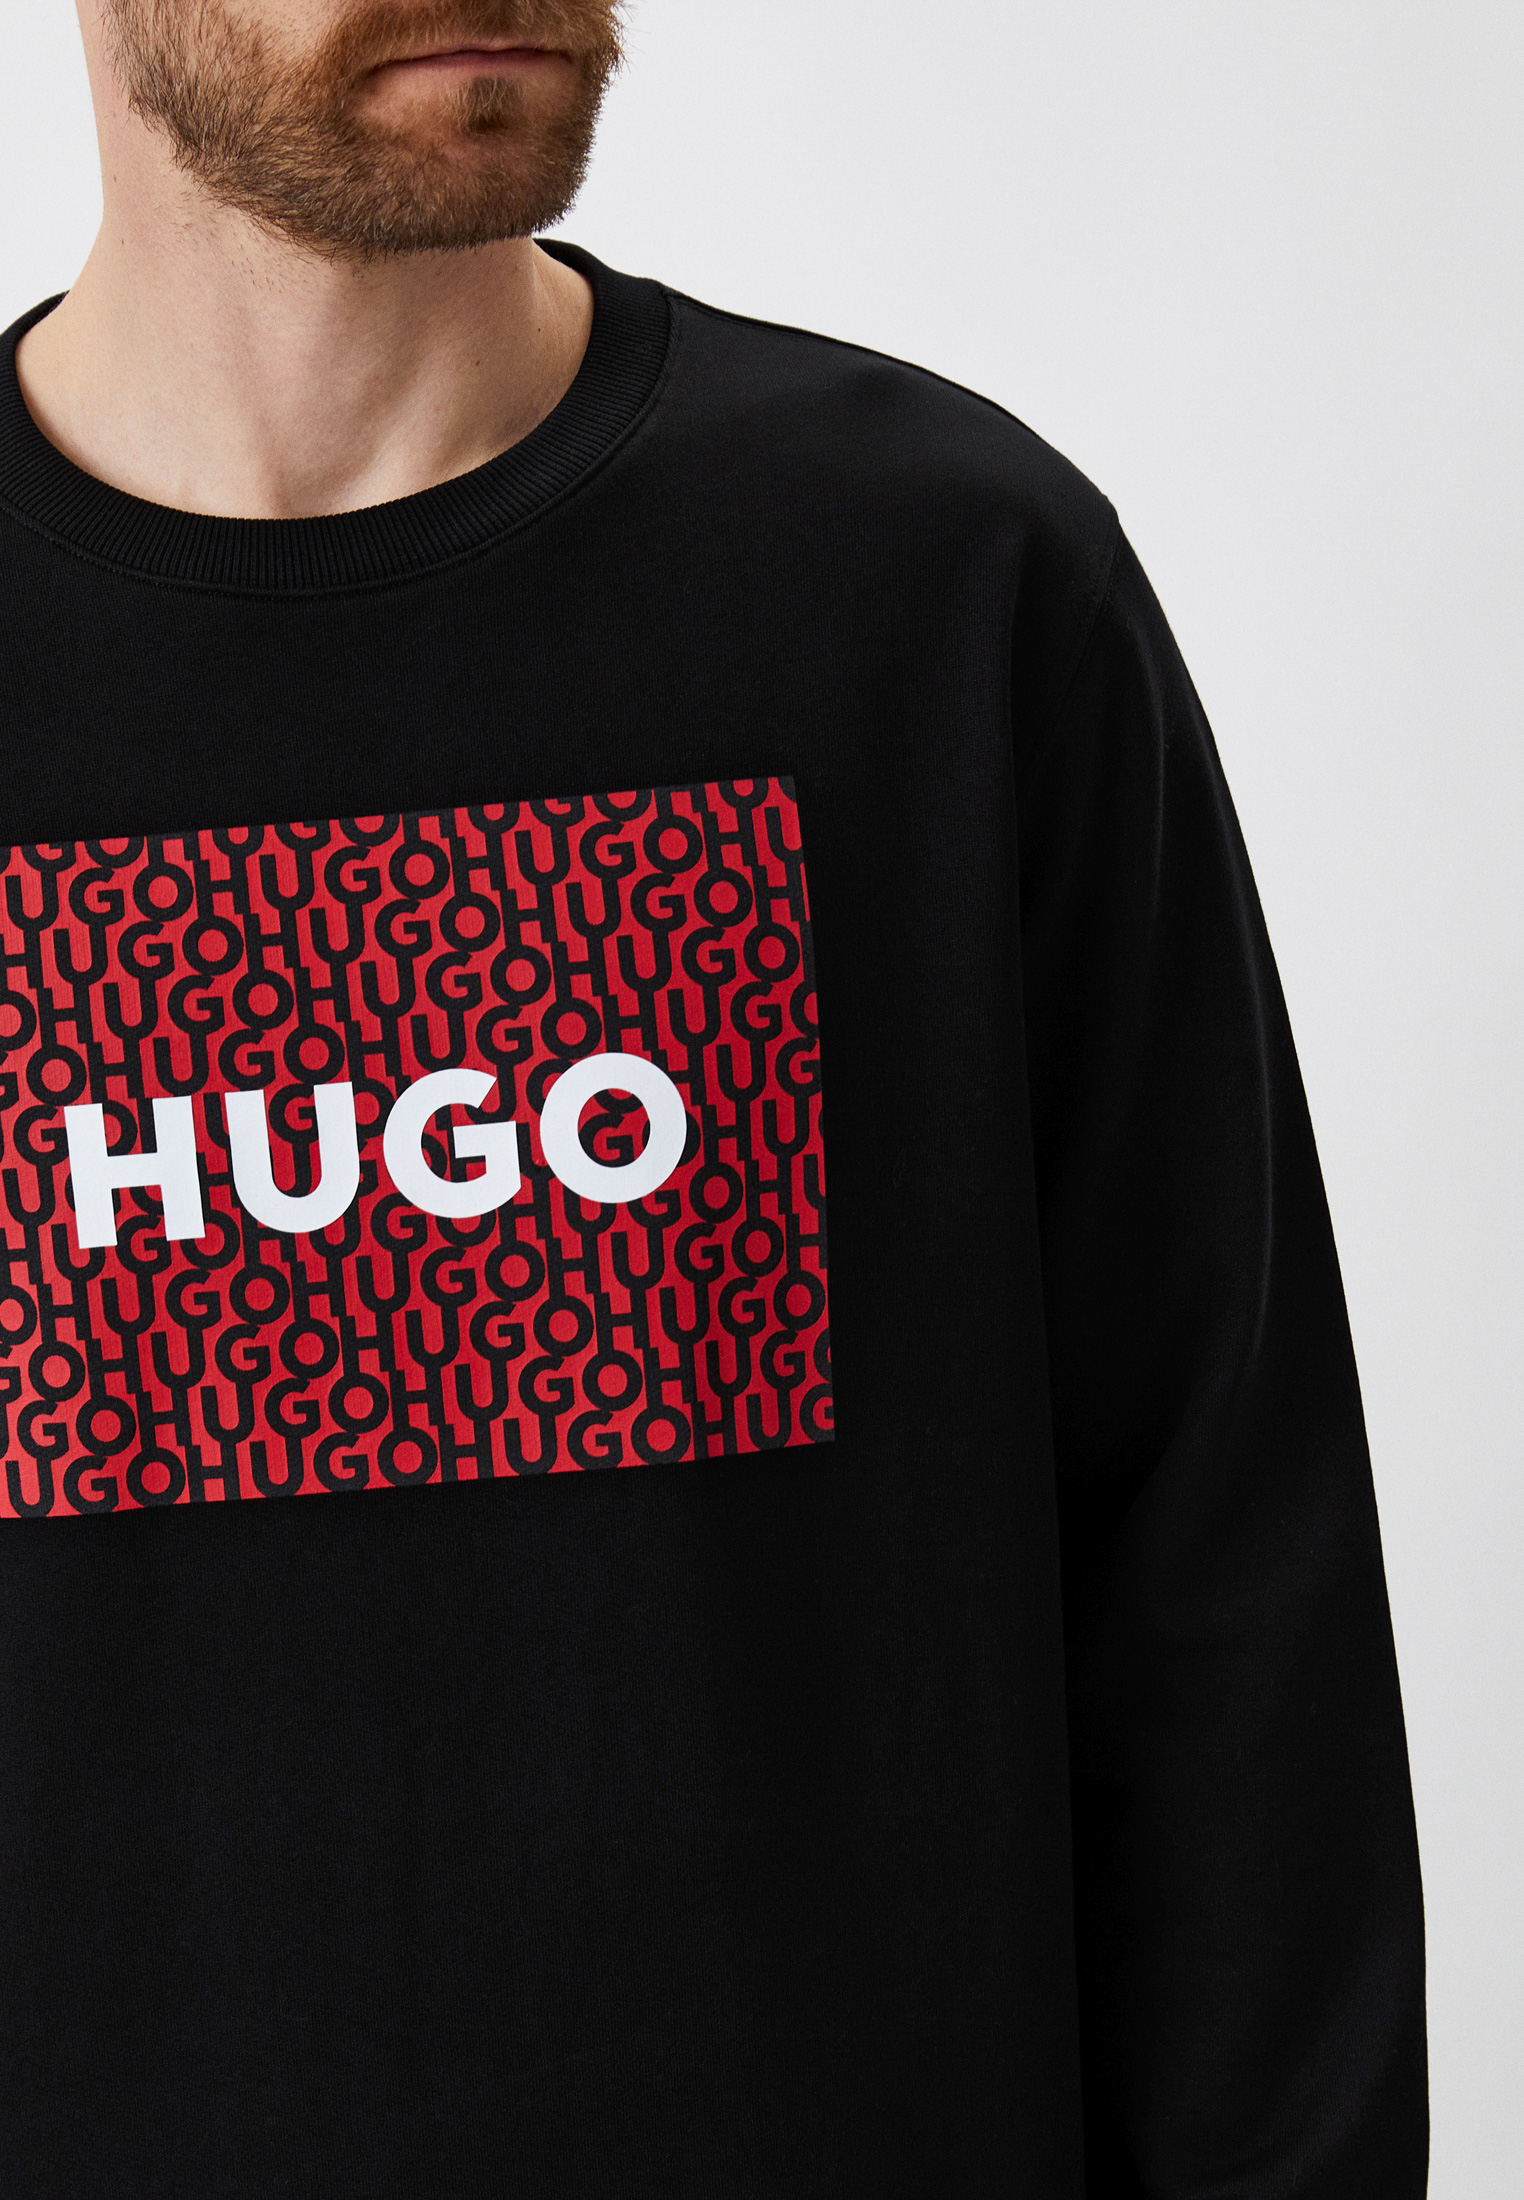 Кофта hugo. Свитшот Hugo мужской черный. Толстовка Hugo мужская. Hugo свитшот с цветами. Hugo свитшот с цветами мужской.